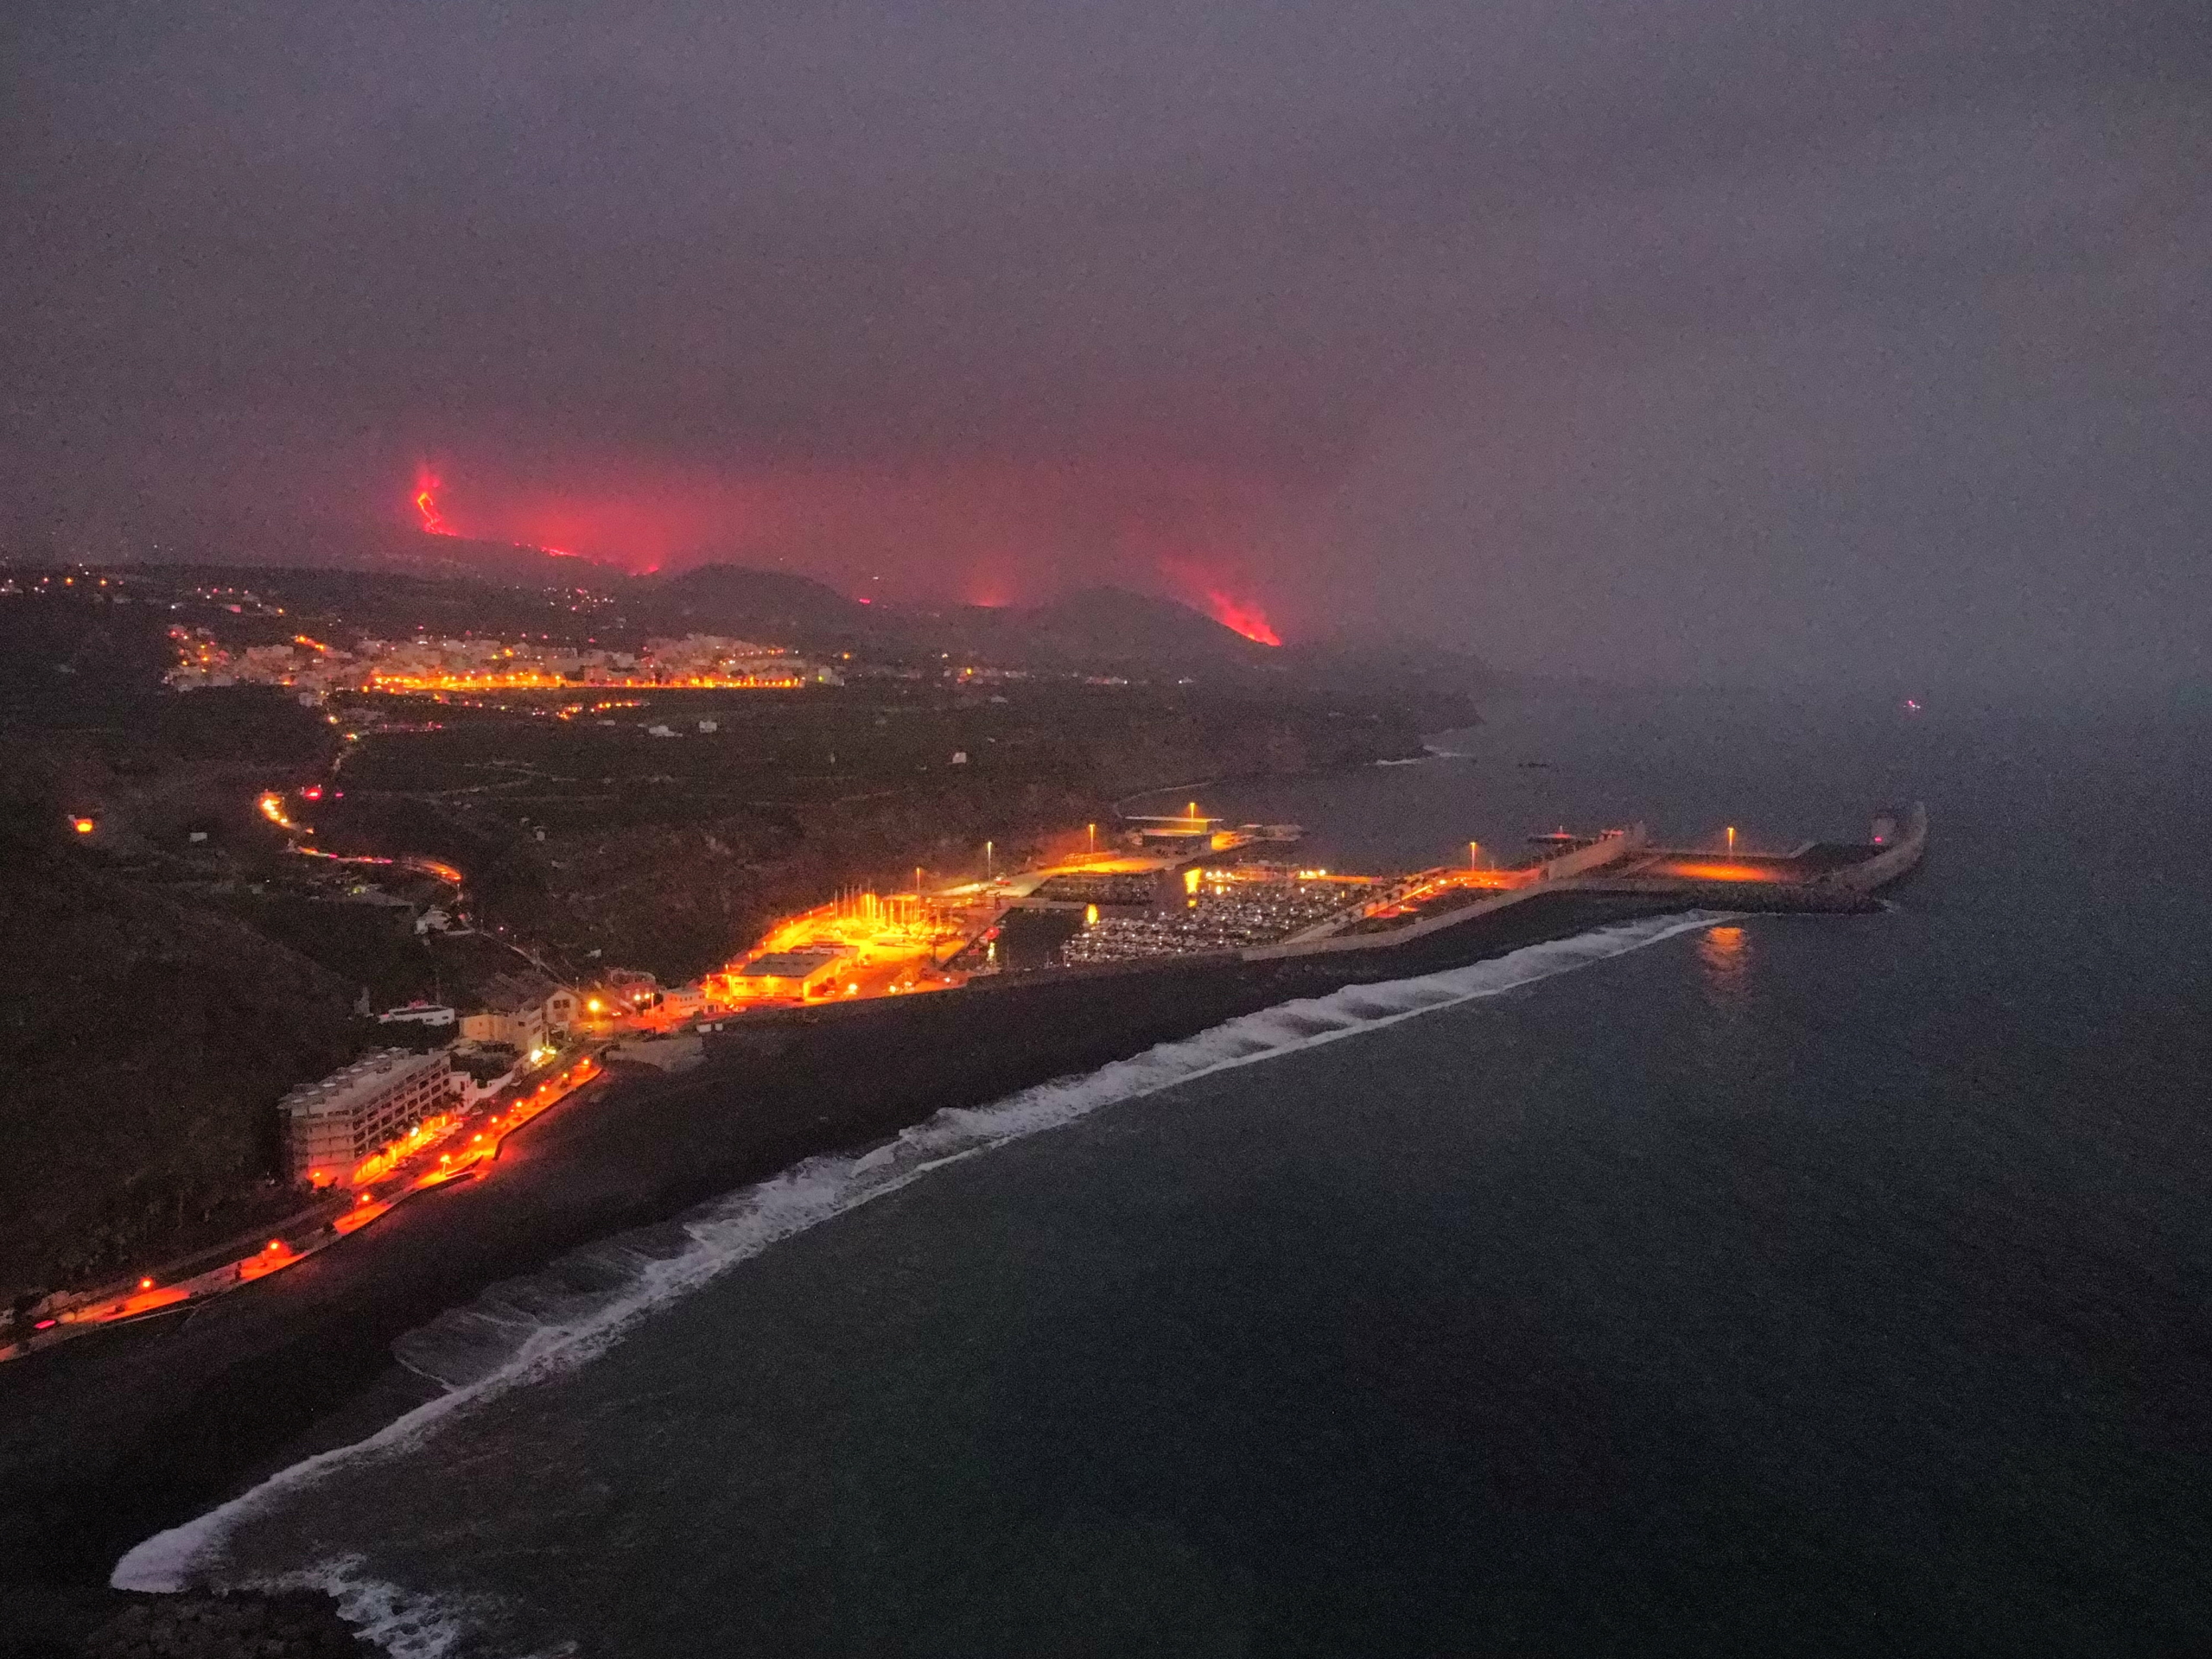 حمم بركان جزيرة بالما الإسبانية تصل البحر.. والسلطات تحذر الأهالي من كارثة خطرة وشيكة - فيديو وصور